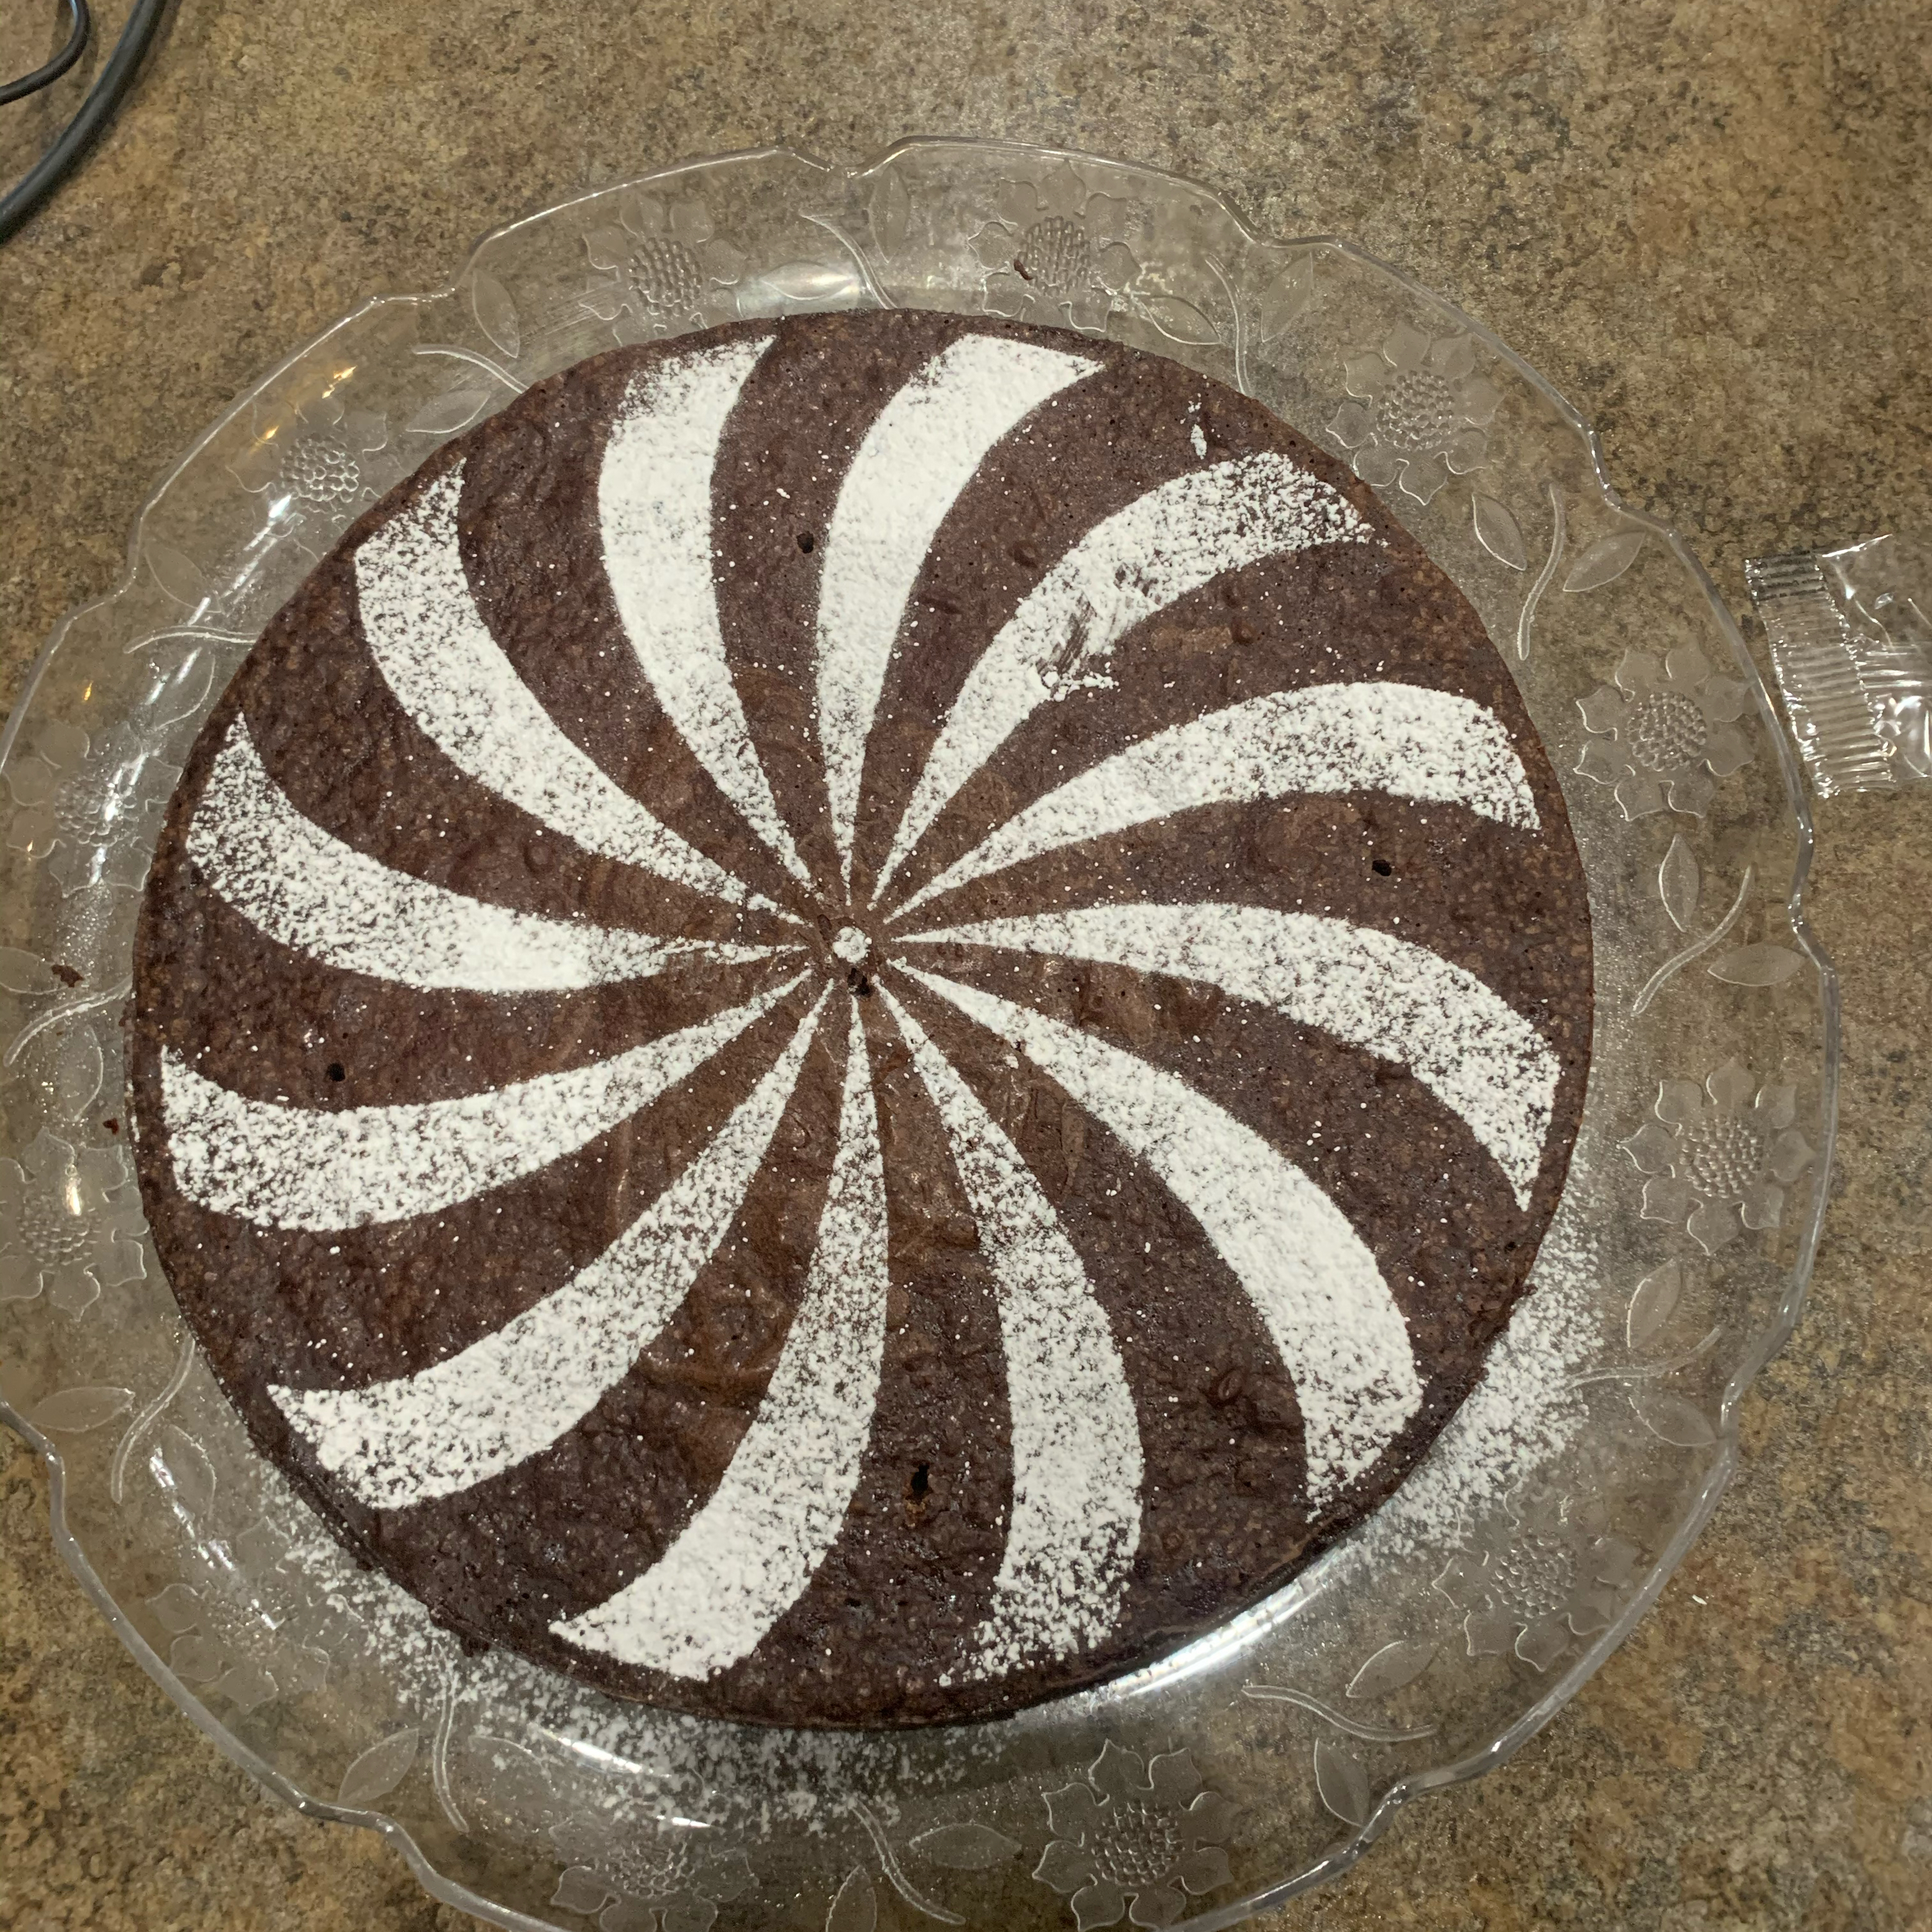 Flourless Chocolate Espresso Cake 